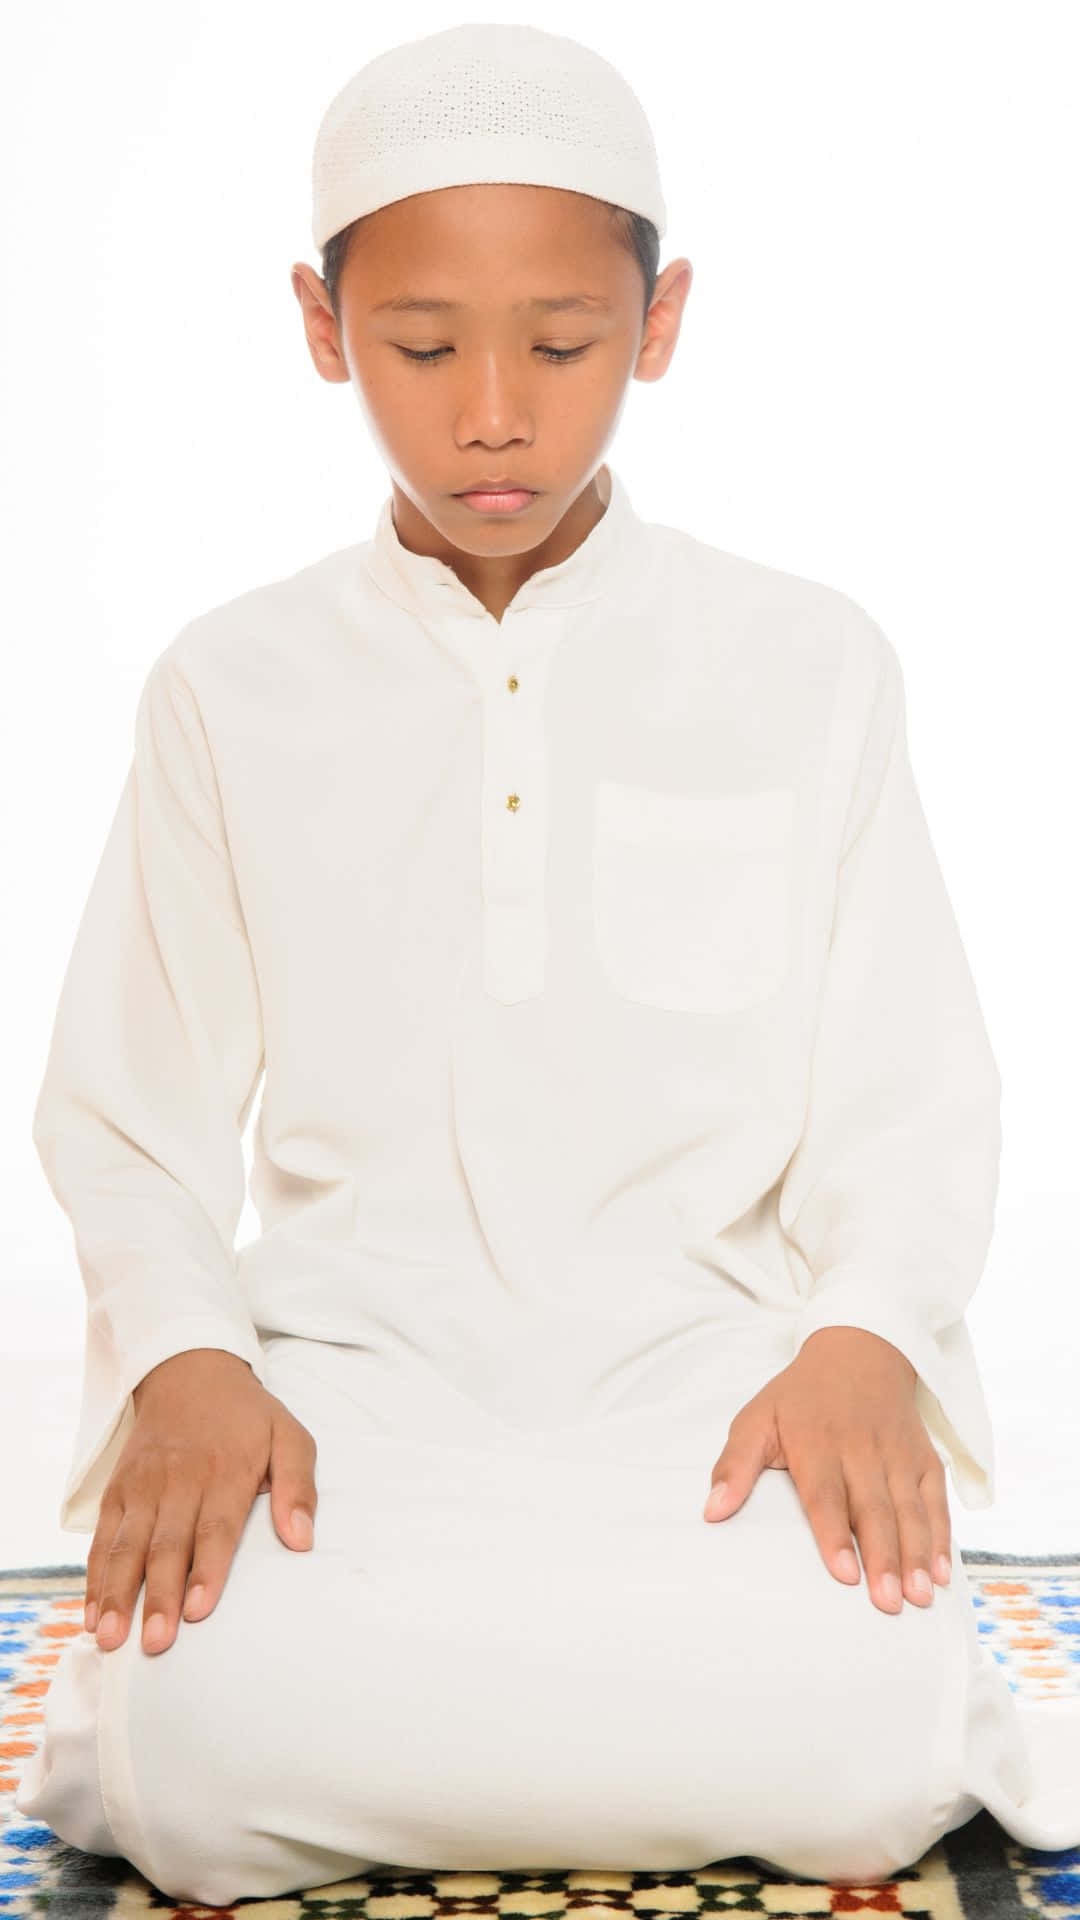 Young Muslim Boy Praying Wallpaper